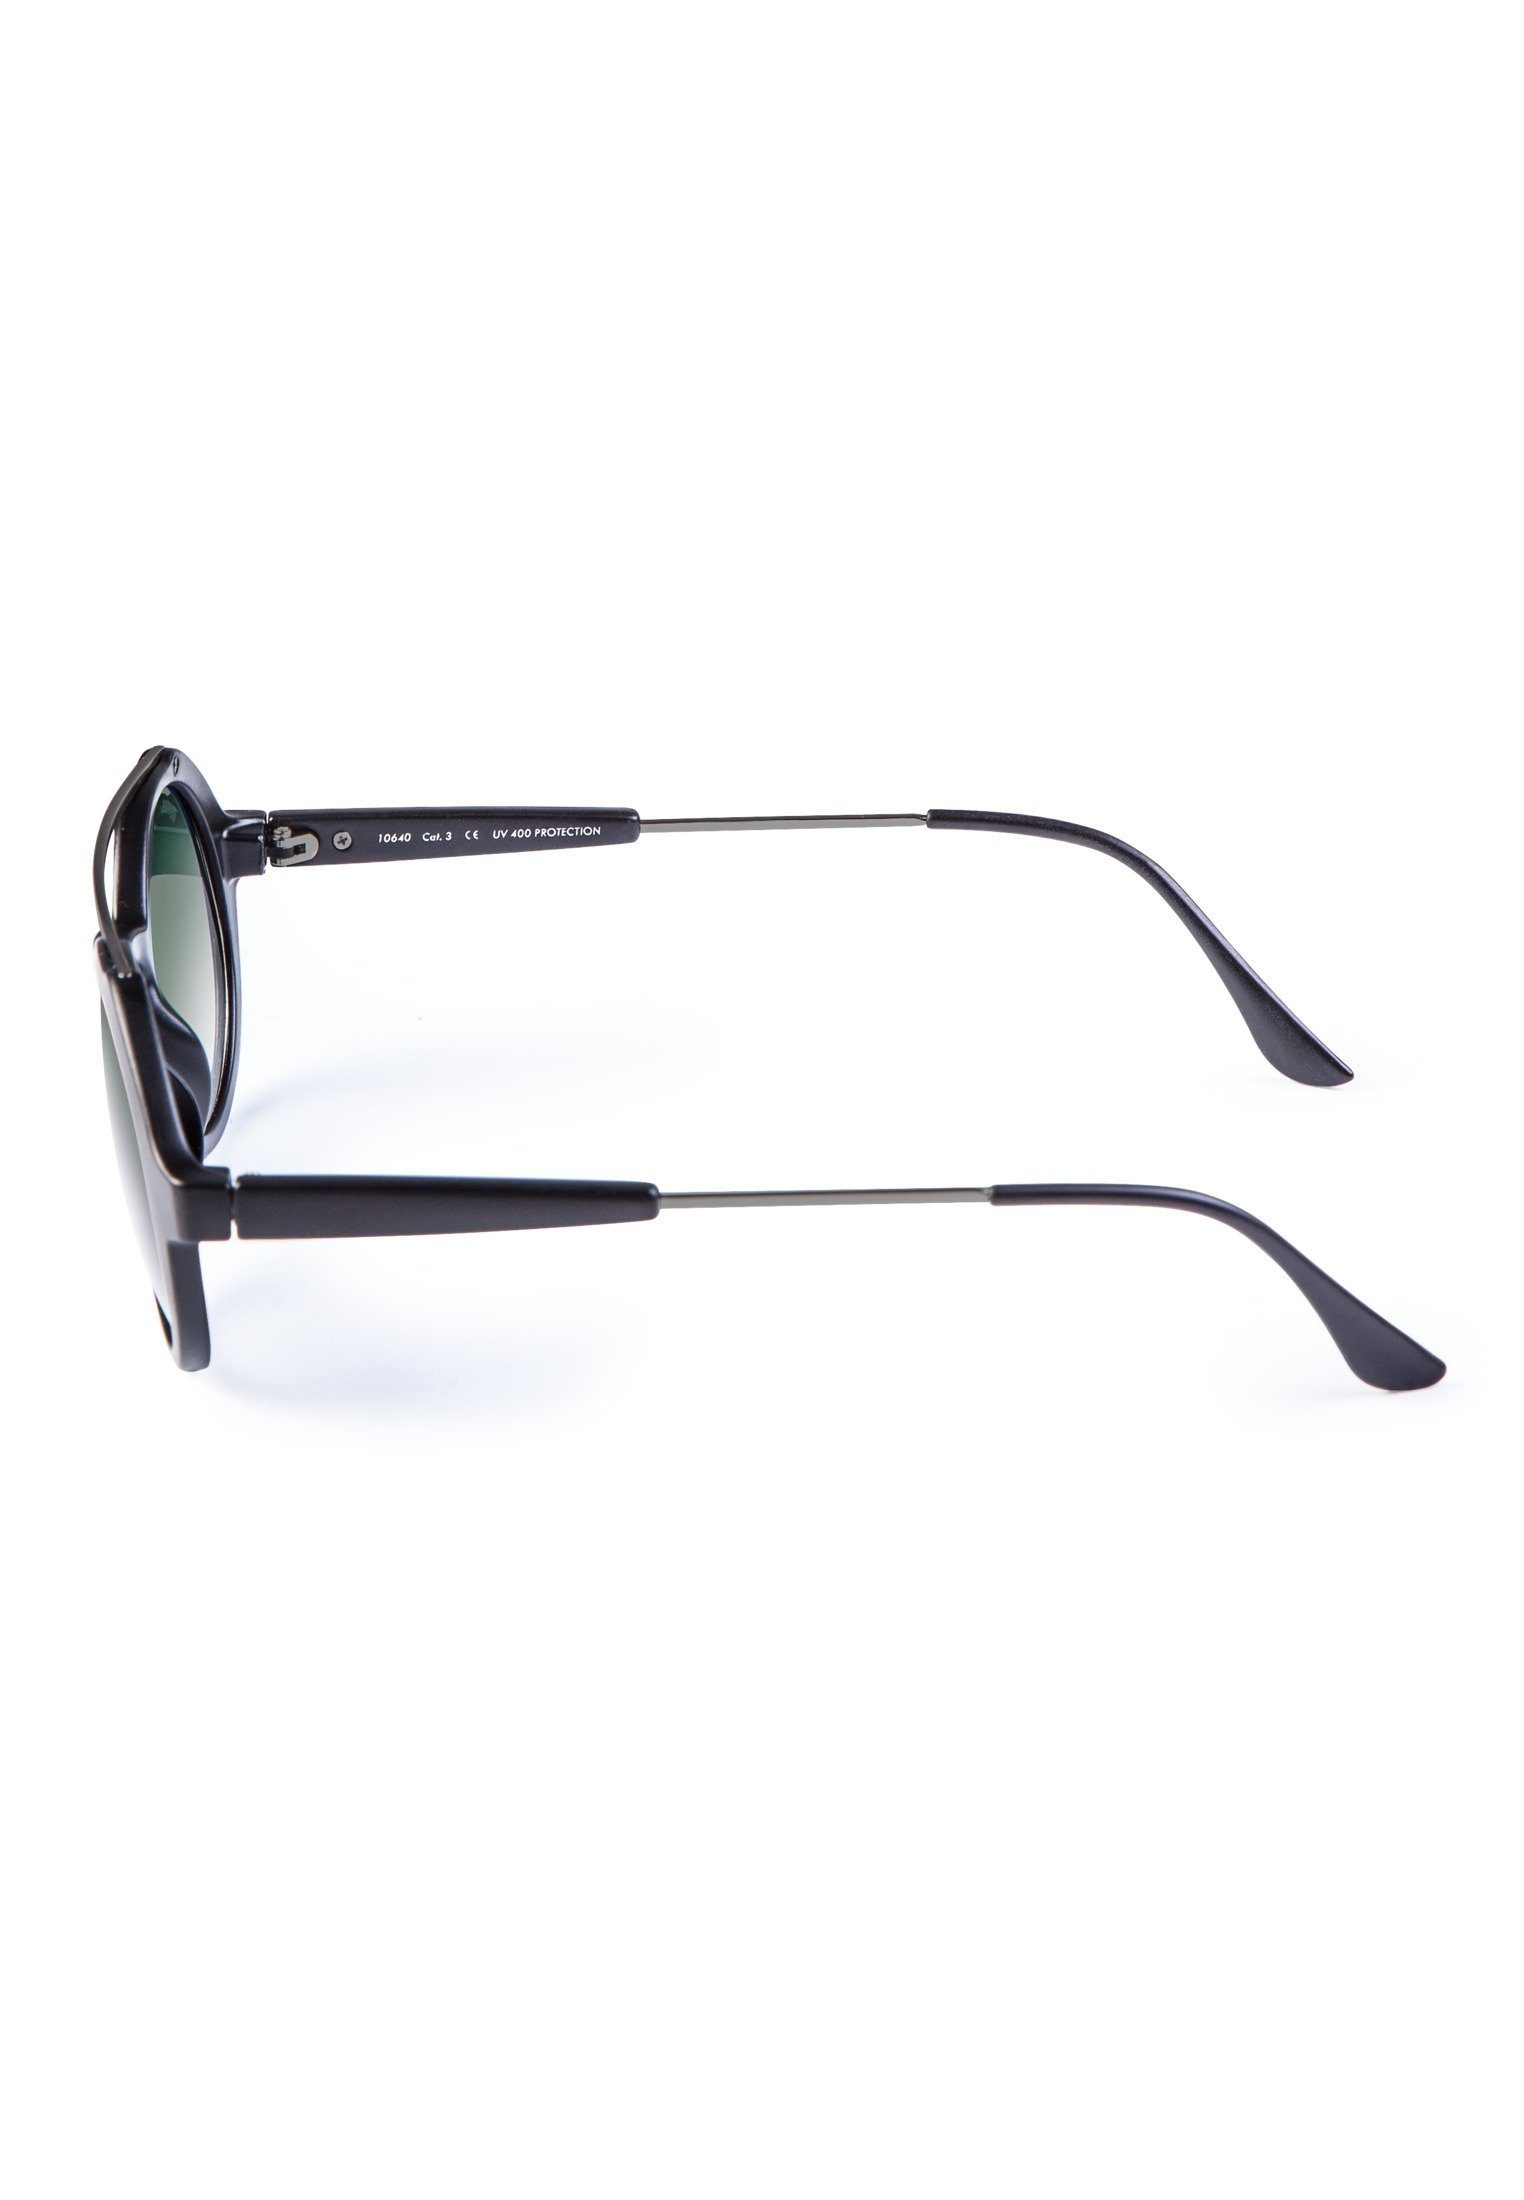 blk/grn Retro MSTRDS Accessoires Sonnenbrille Space Sunglasses